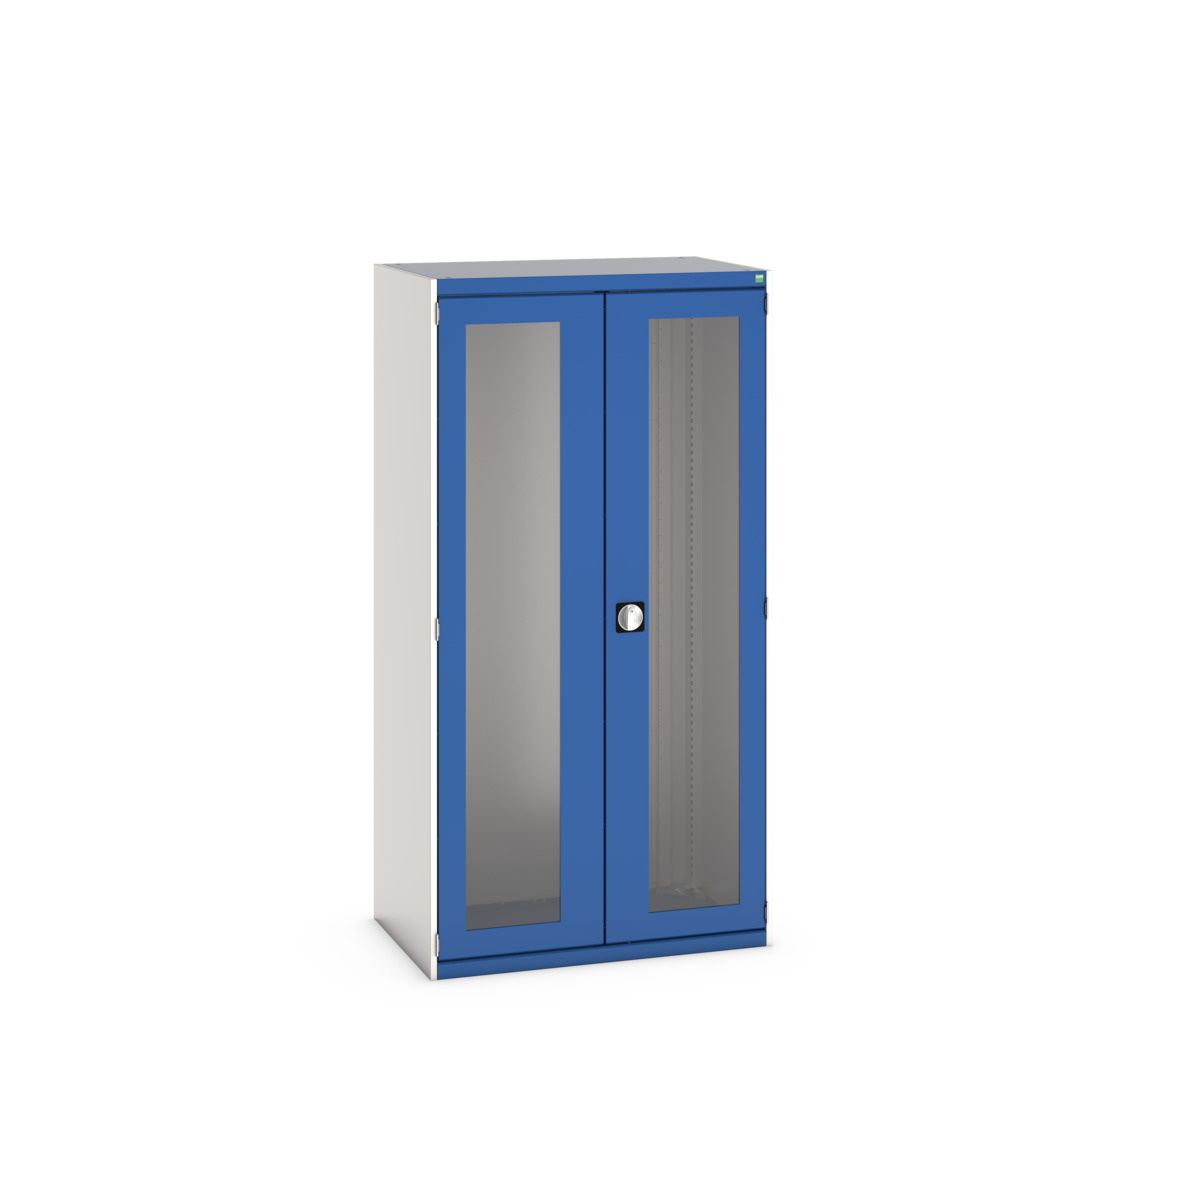 40013023.11V - cubio cupboard